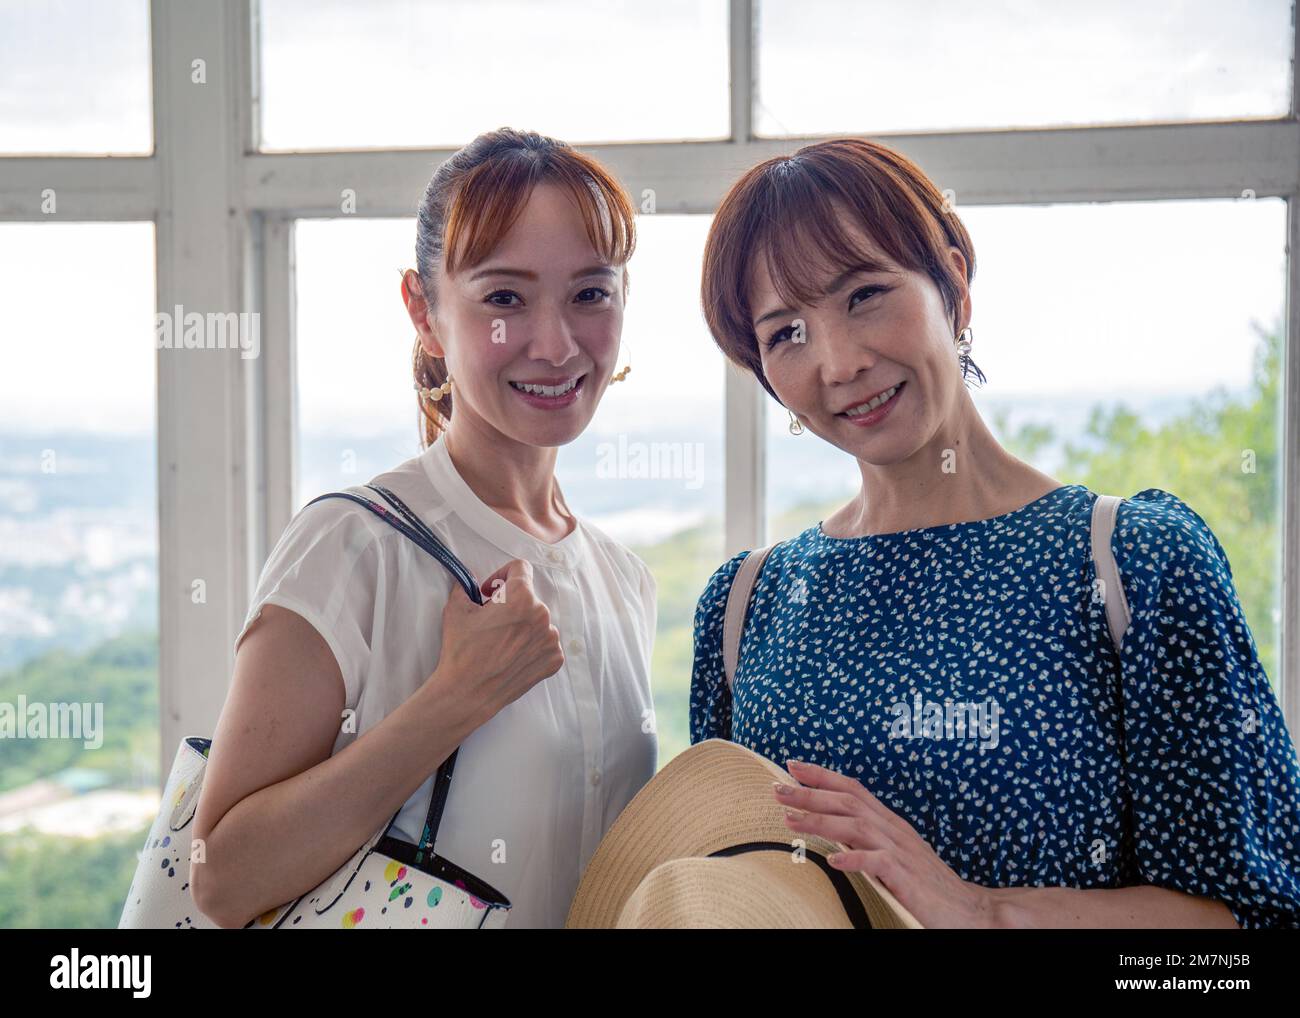 Zwei reife japanische Frauen, Freunde, Seite an Seite, an einem Tag, die in die Kamera schauen. Stockfoto